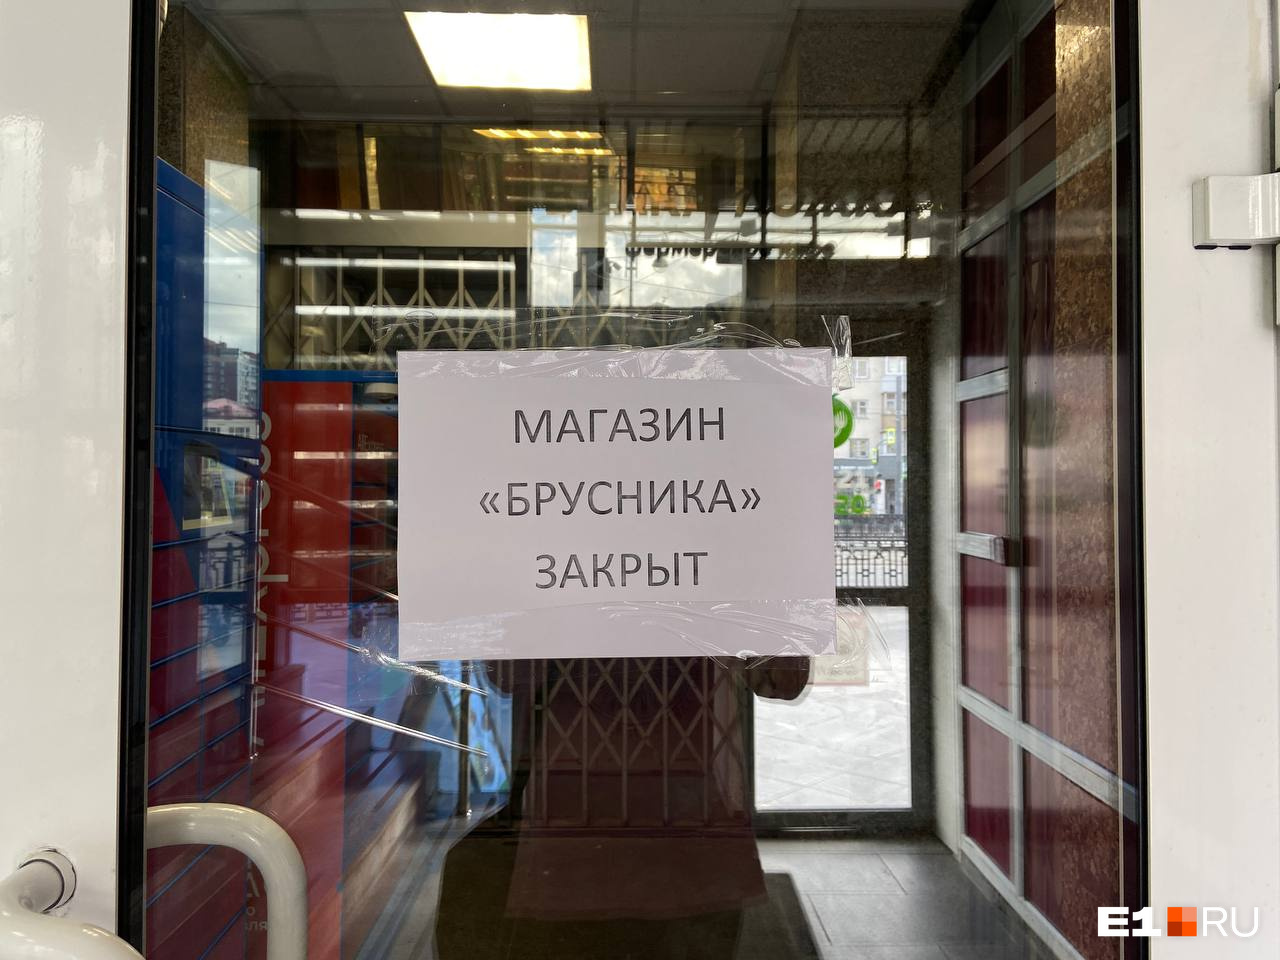 В самом центре Екатеринбурга закрылся продуктовый магазин известной сети